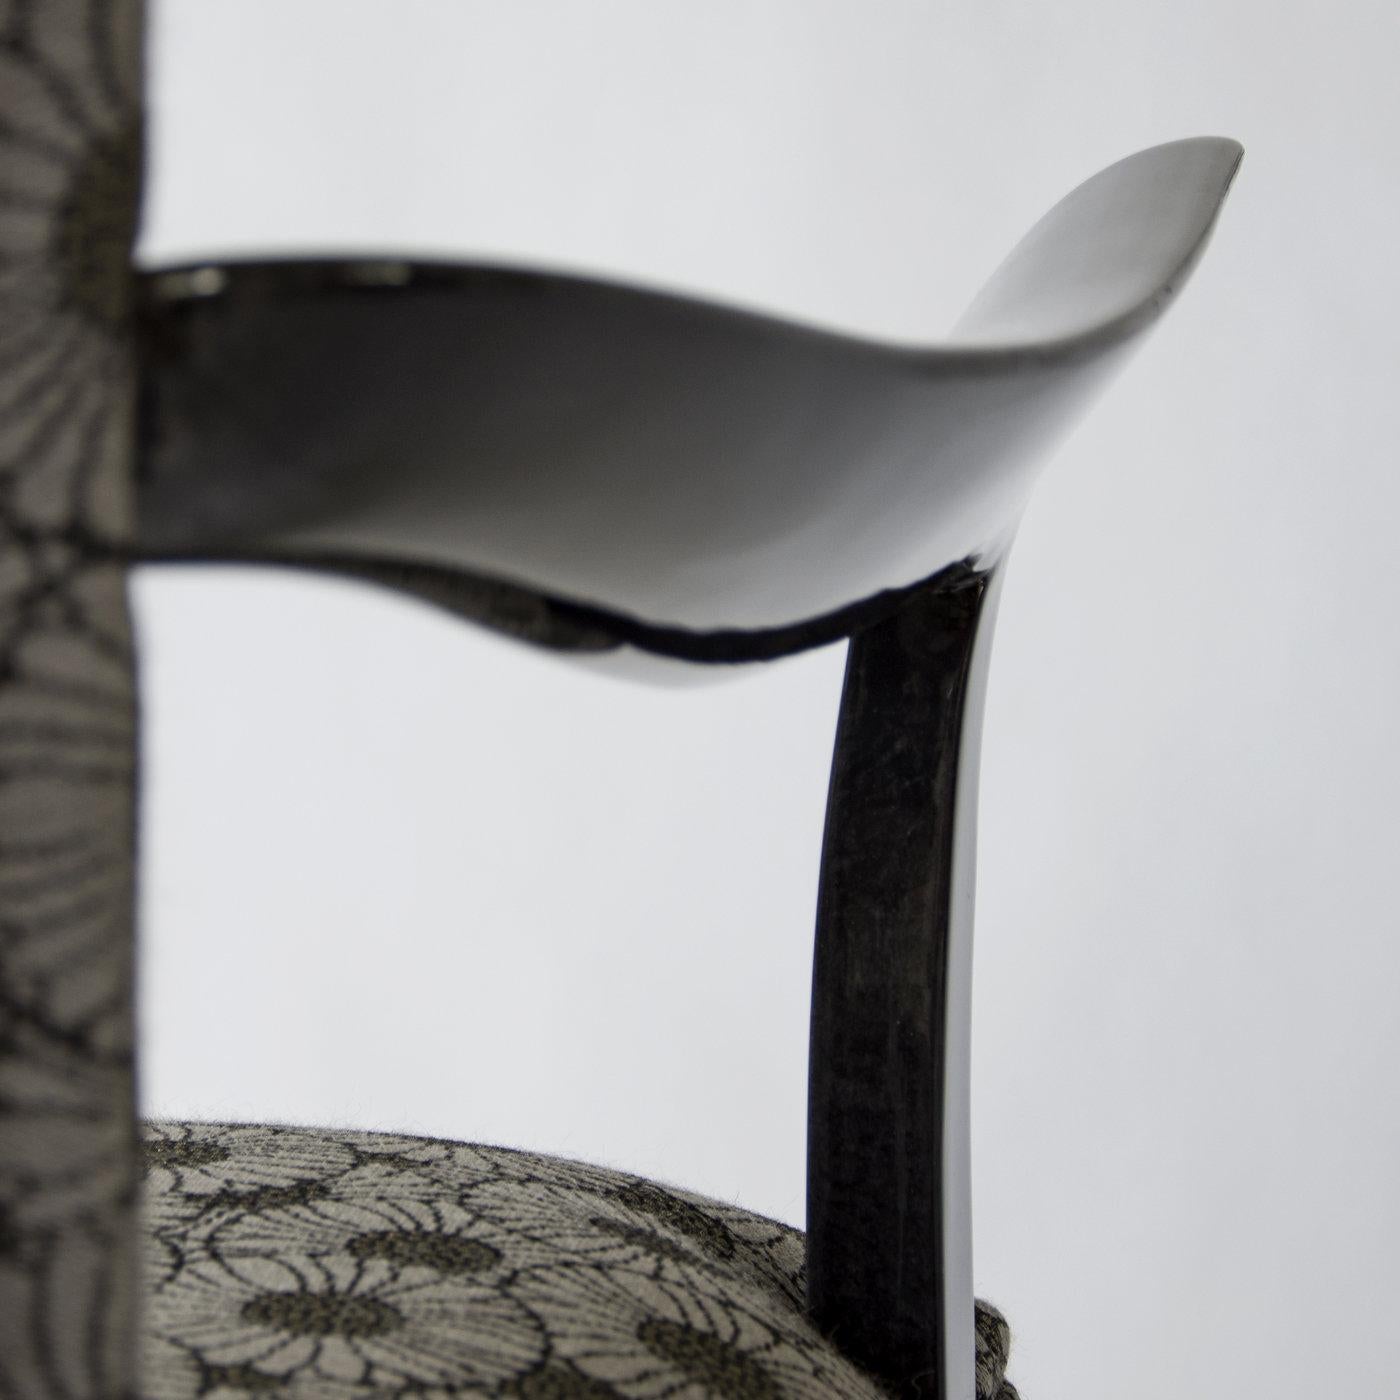 Der Deco Chair ist ein exquisites Beispiel für ein Designer-Sitzmöbel mit einer eleganten und raffinierten Struktur, die mit glänzendem anthrazitgrauem Pergament überzogen ist, und einer gepolsterten Sitzfläche und Rückenlehne, die mit Vintage-Stoff